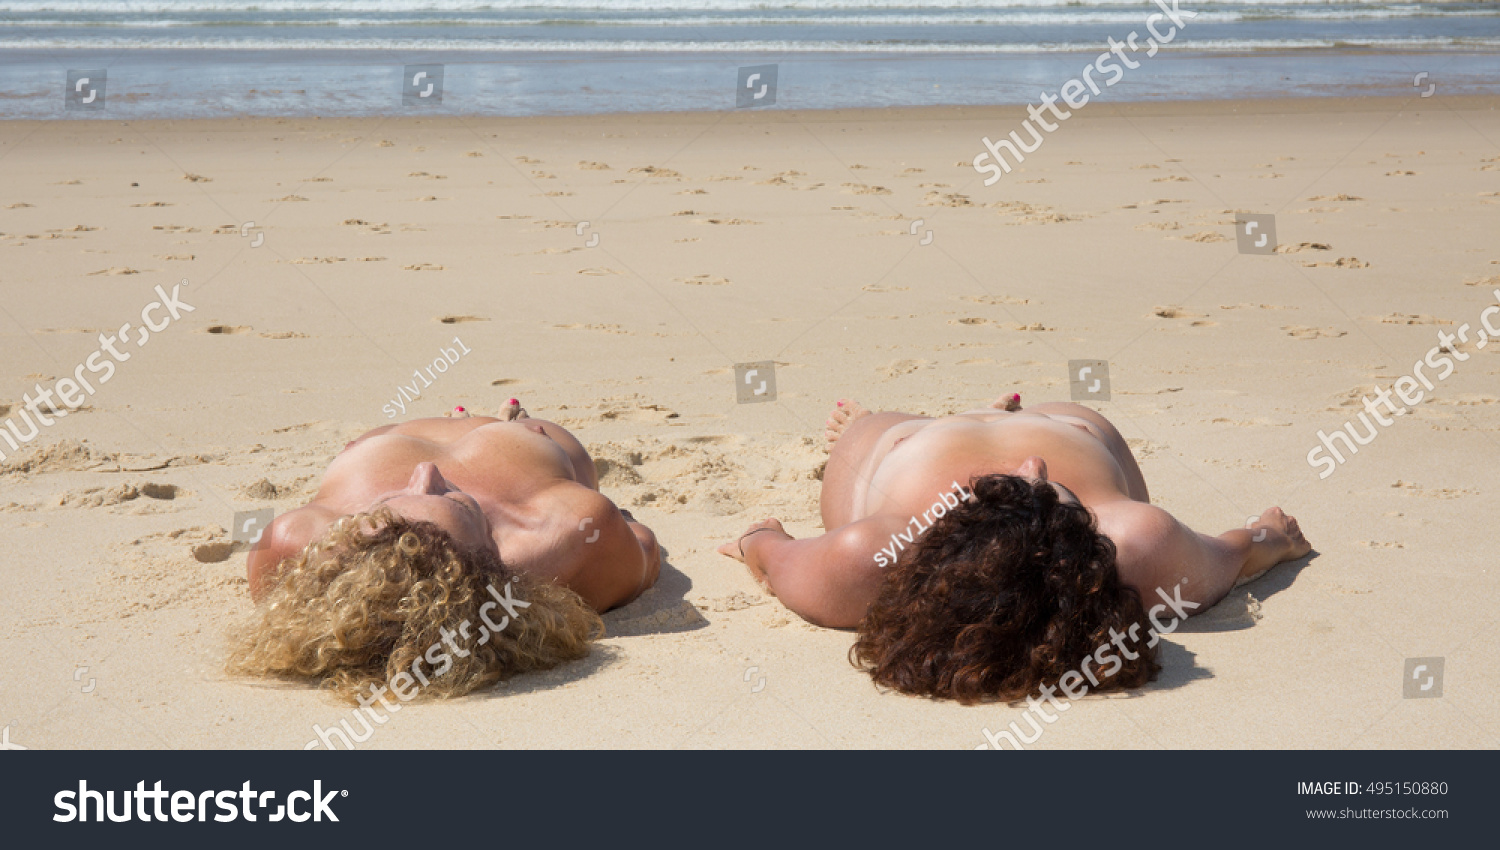 Fkk-girls Nude Swimming